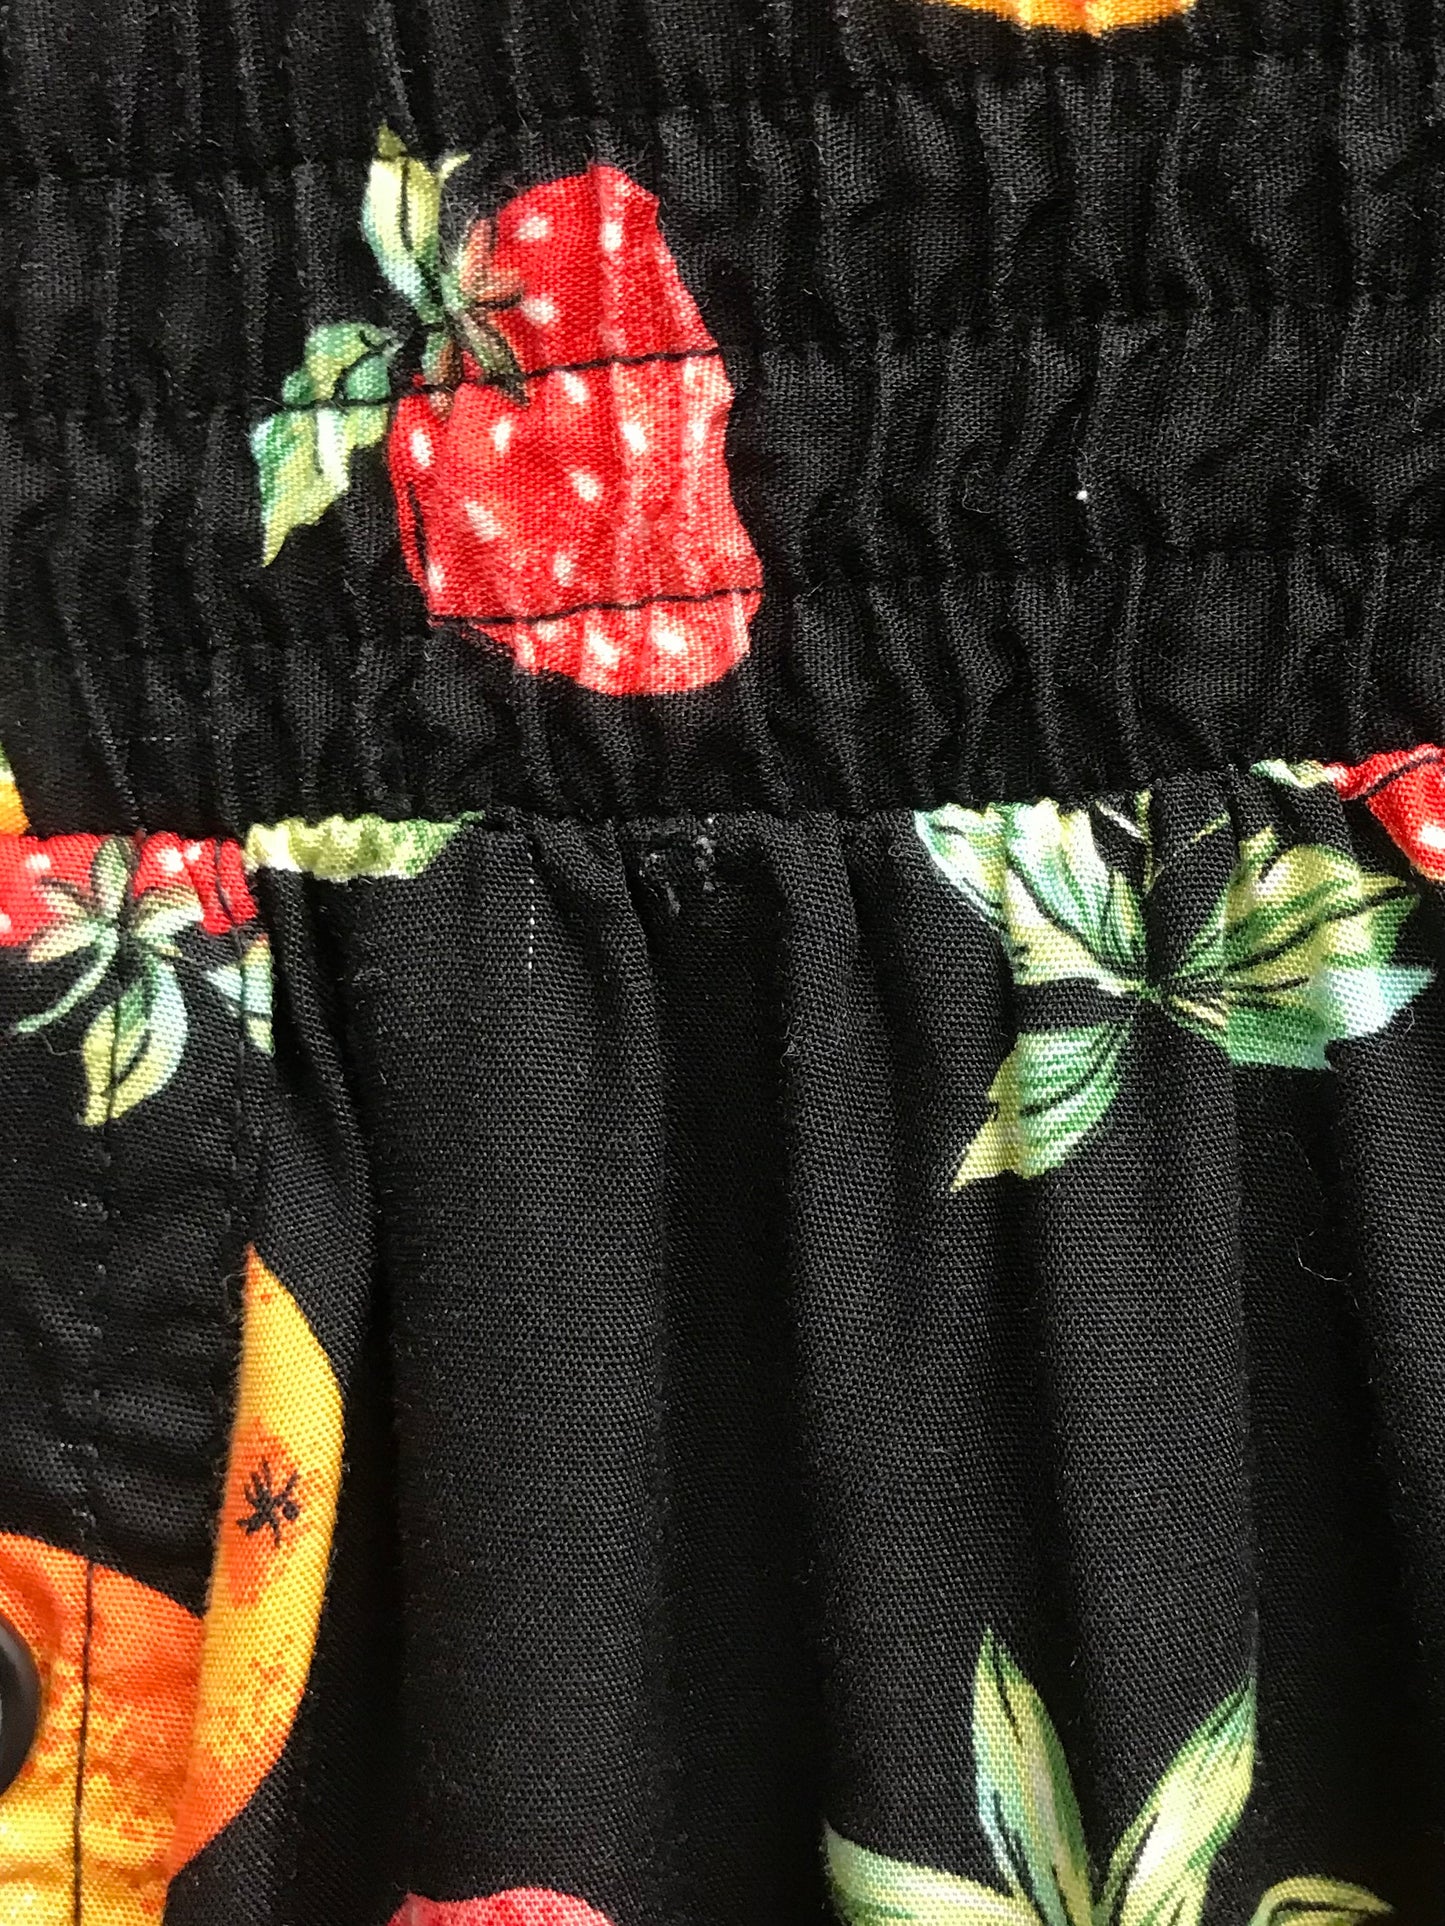 Vintage Fruits Skirt [H24836]